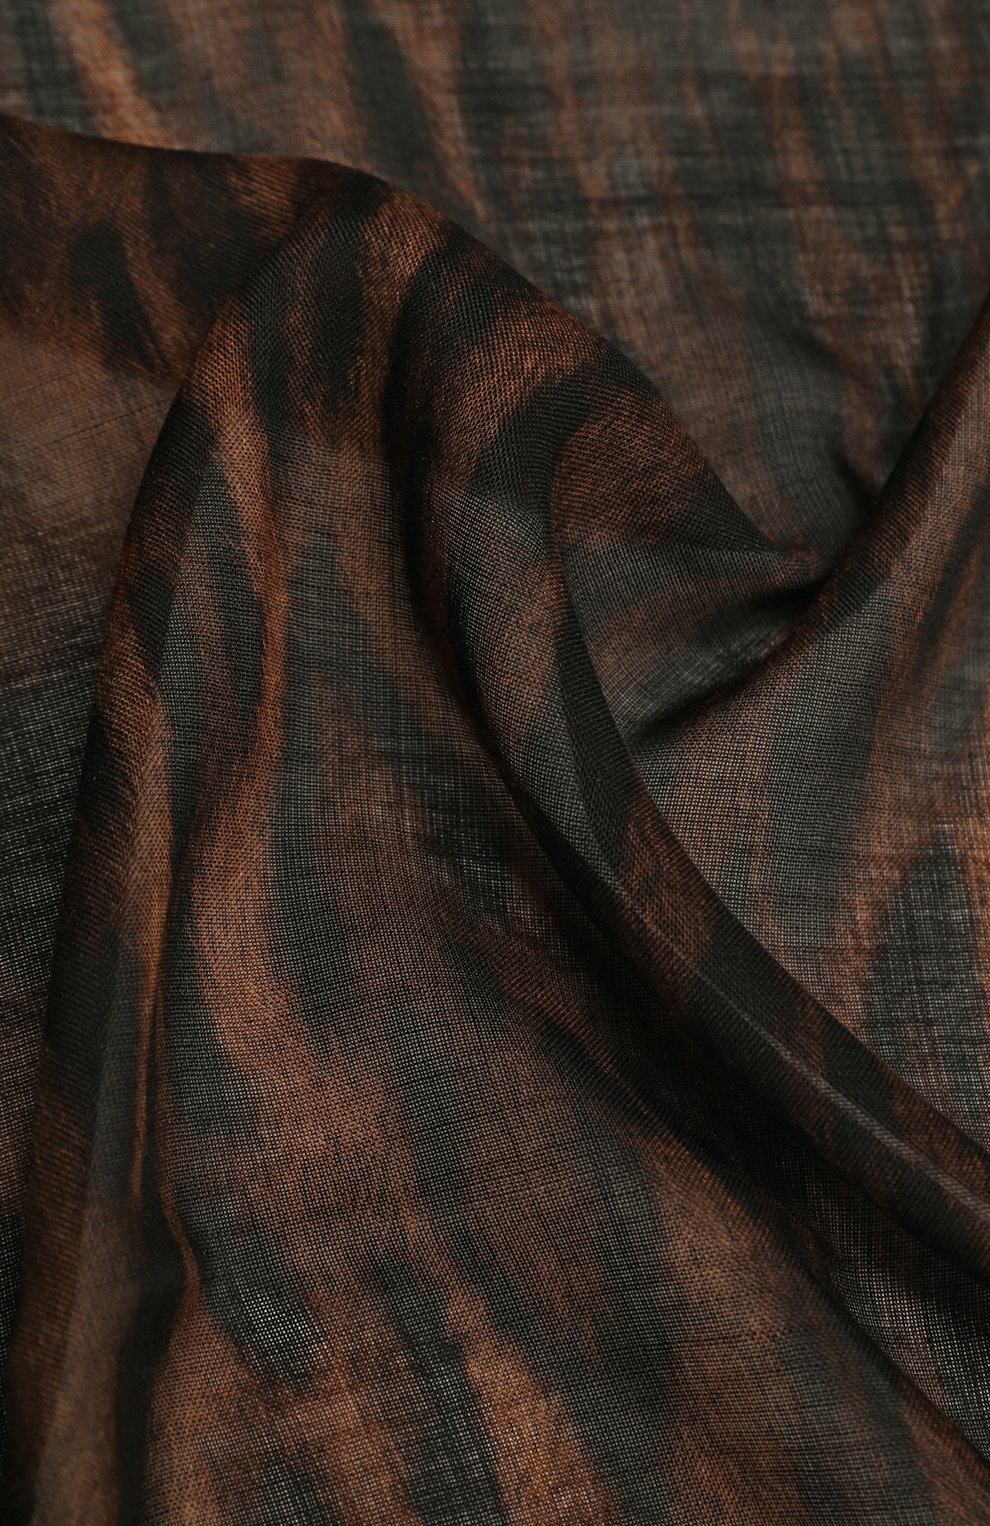 Женский шарф из кашемира и шелка GIVENCHY леопардового цвета, арт. GW7020/SQ066 | Фото 3 (Материал: Текстиль, Кашемир, Шерсть, Шелк)